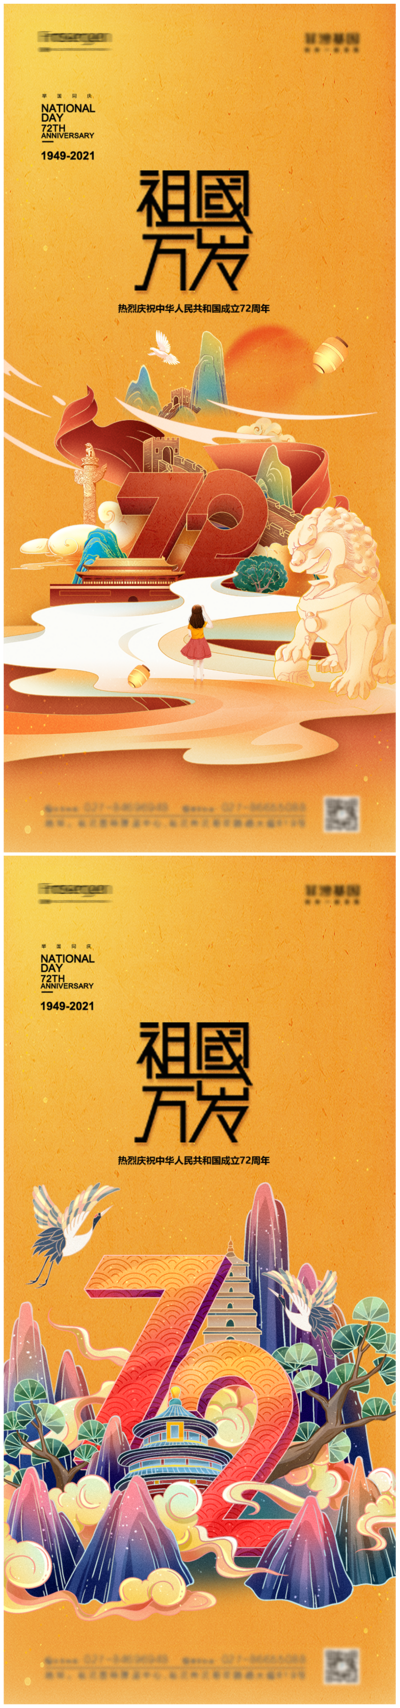 南门网 海报 公历节日 国庆节 72周年 插画 国潮 